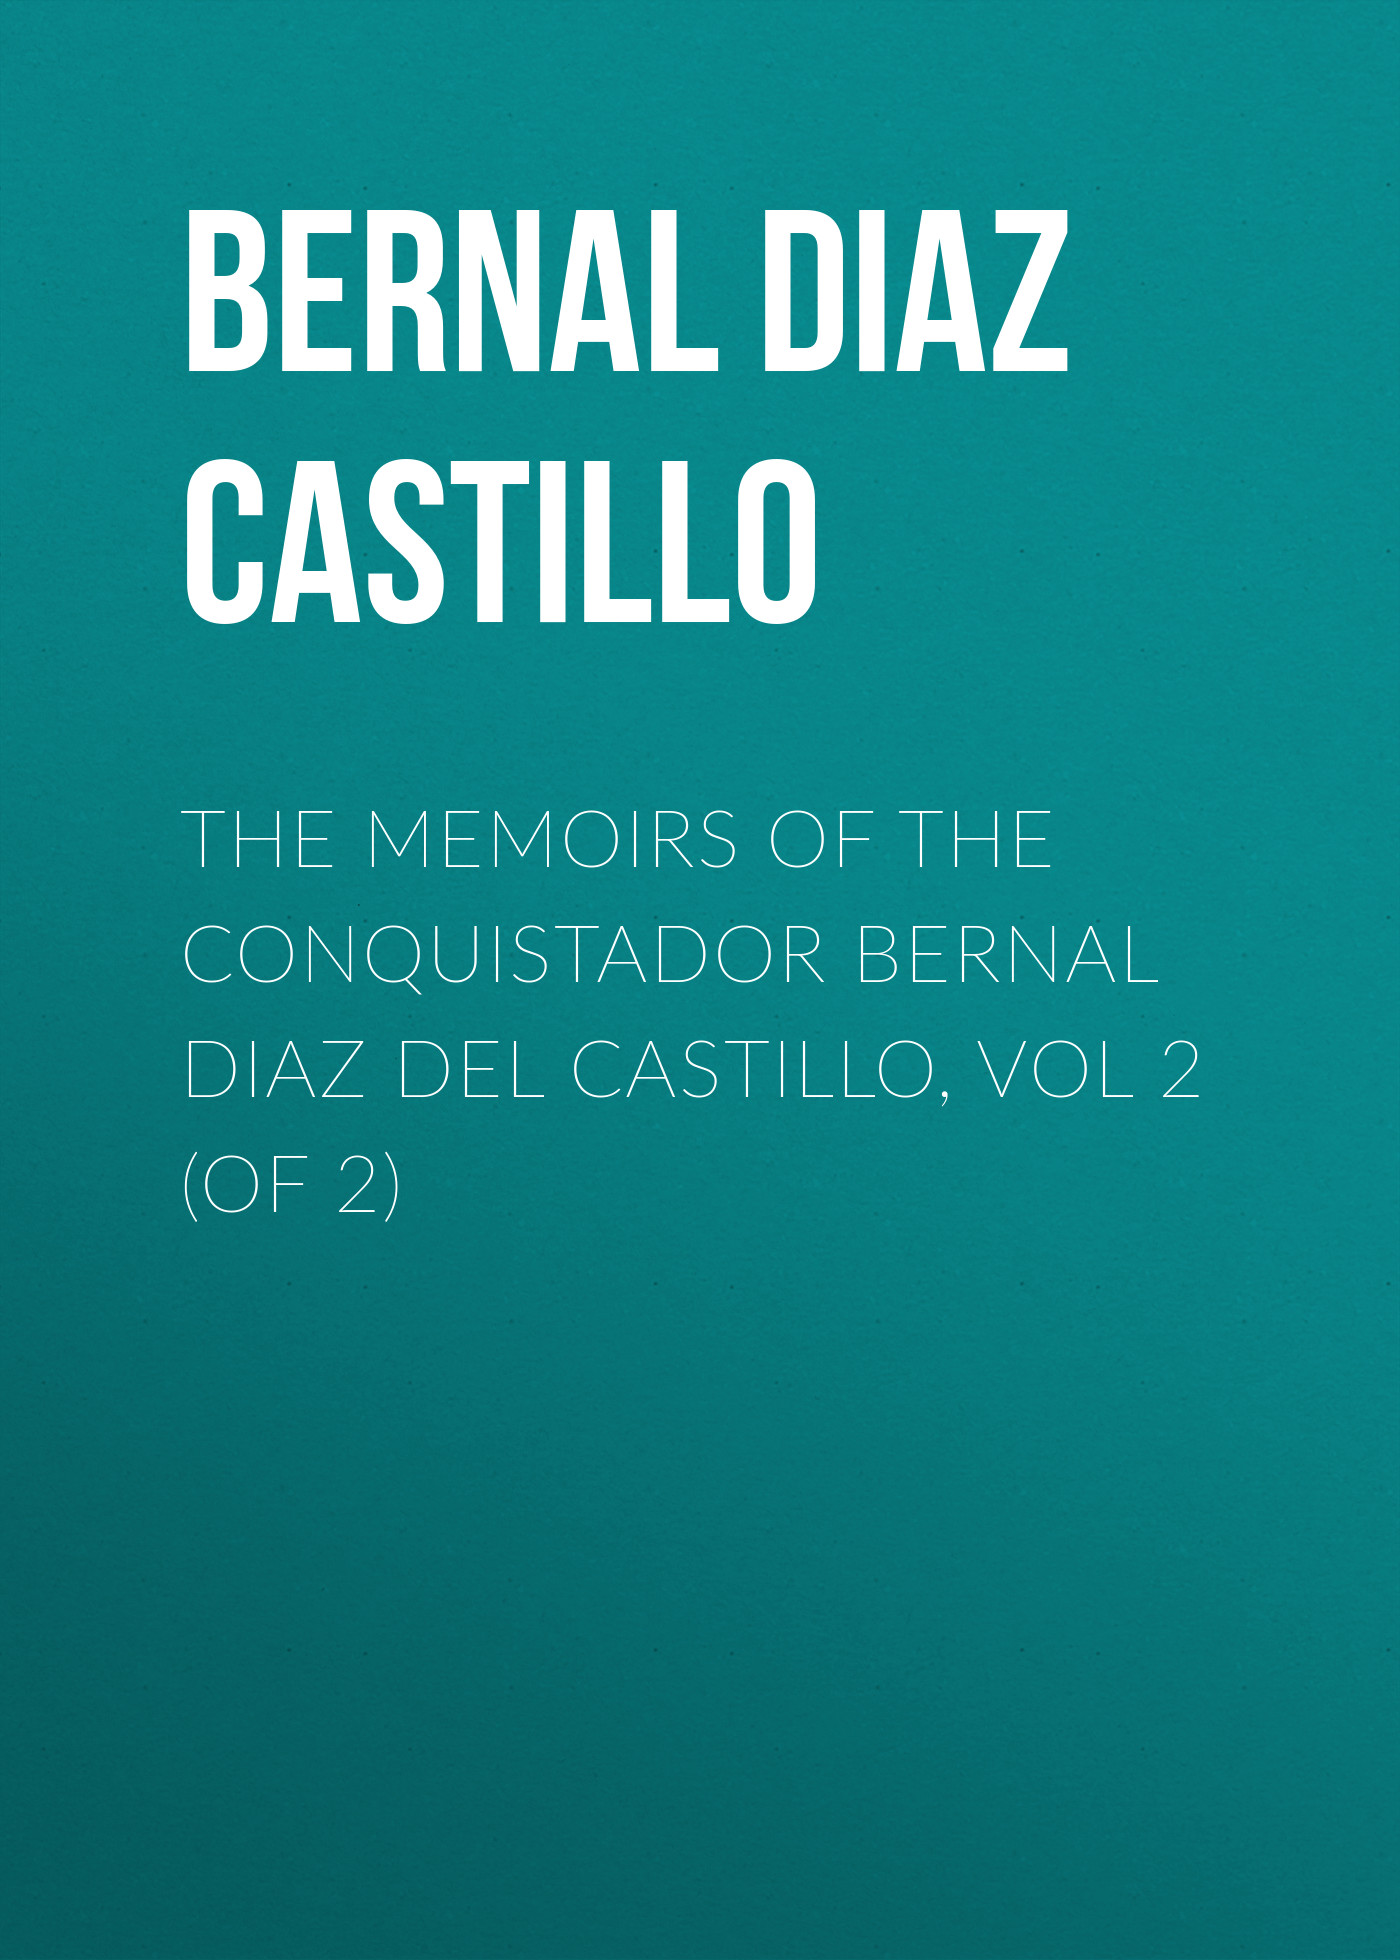 The Memoirs of the Conquistador Bernal Diaz del Castillo, Vol 2 (of 2)